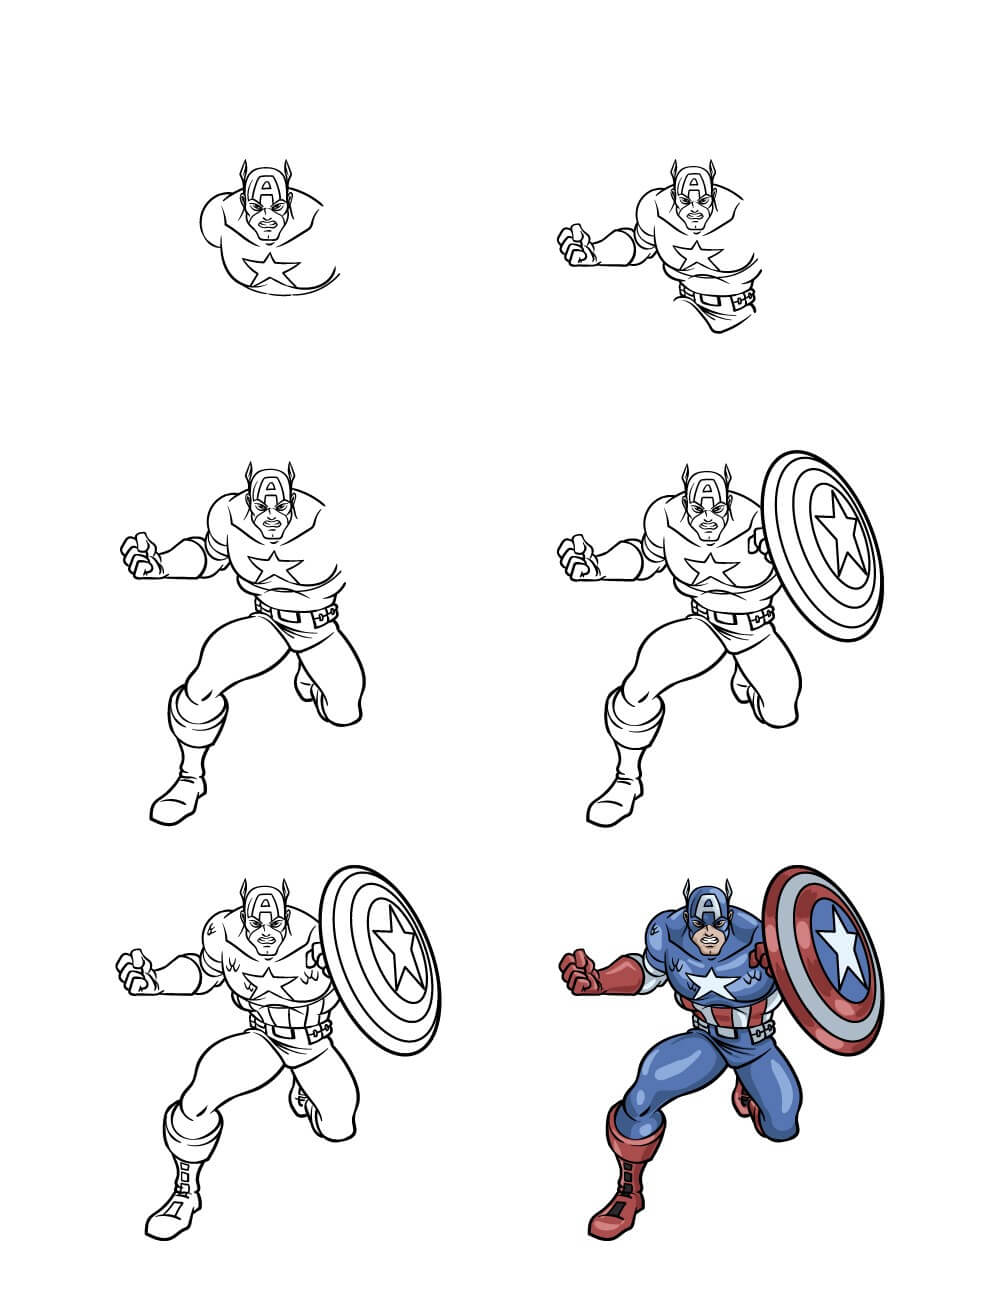 Captain America kämpft 2 zeichnen ideen